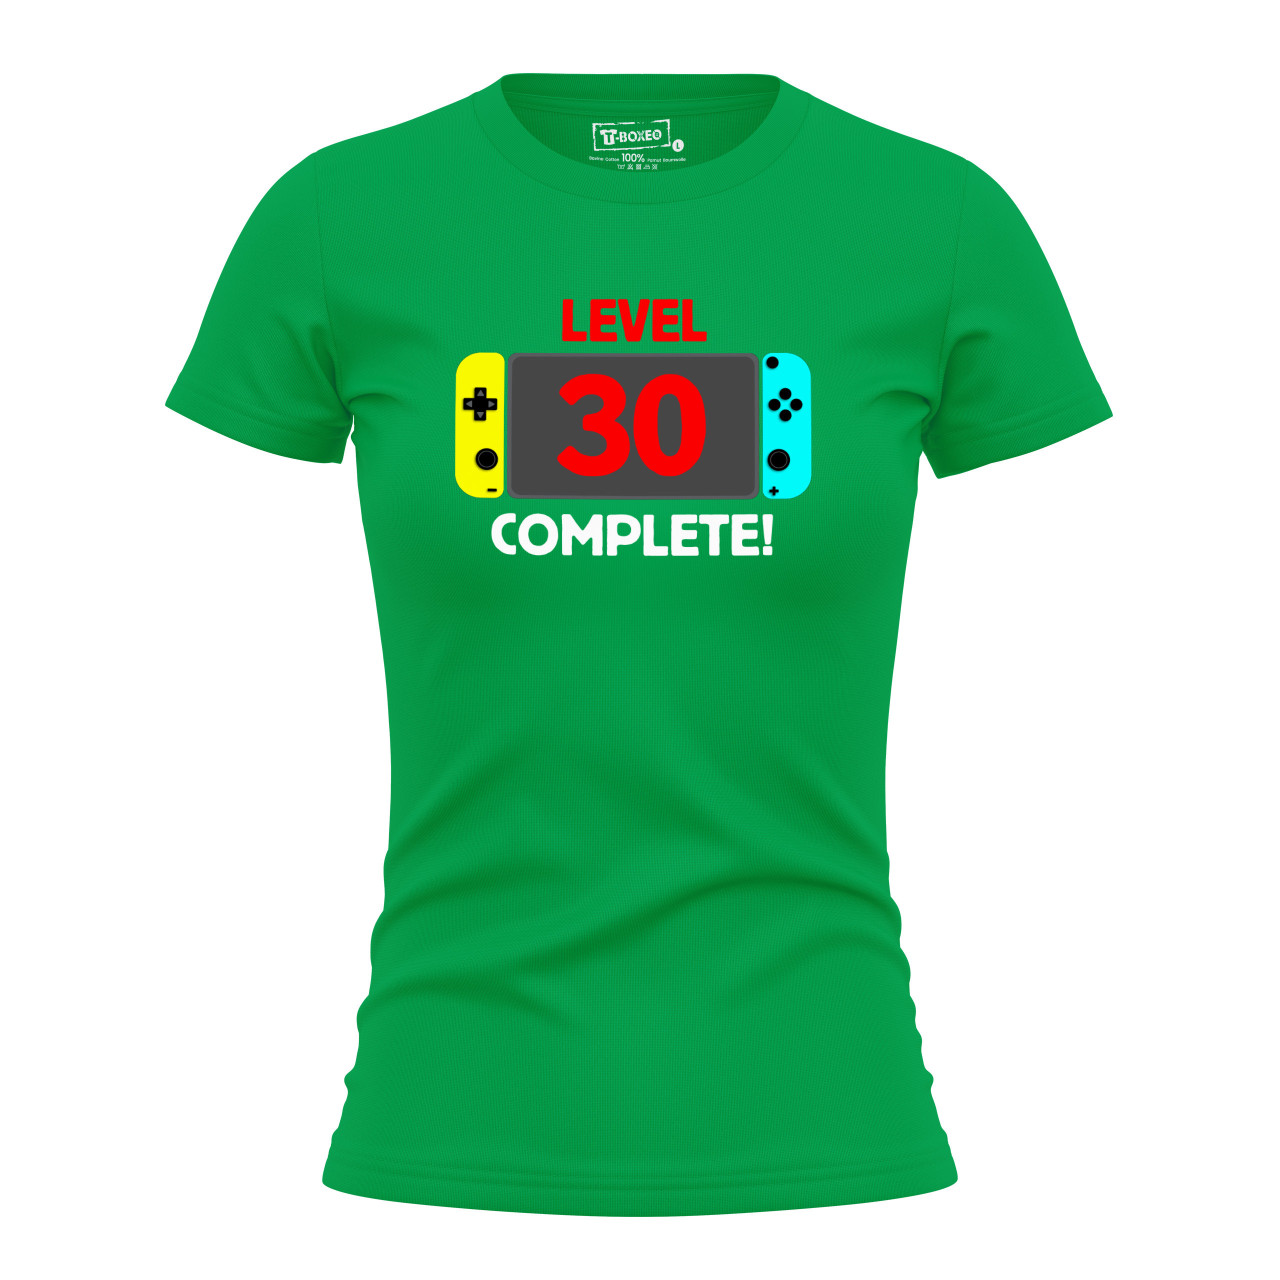 Dámské tričko s potiskem “Level complete” s věkem